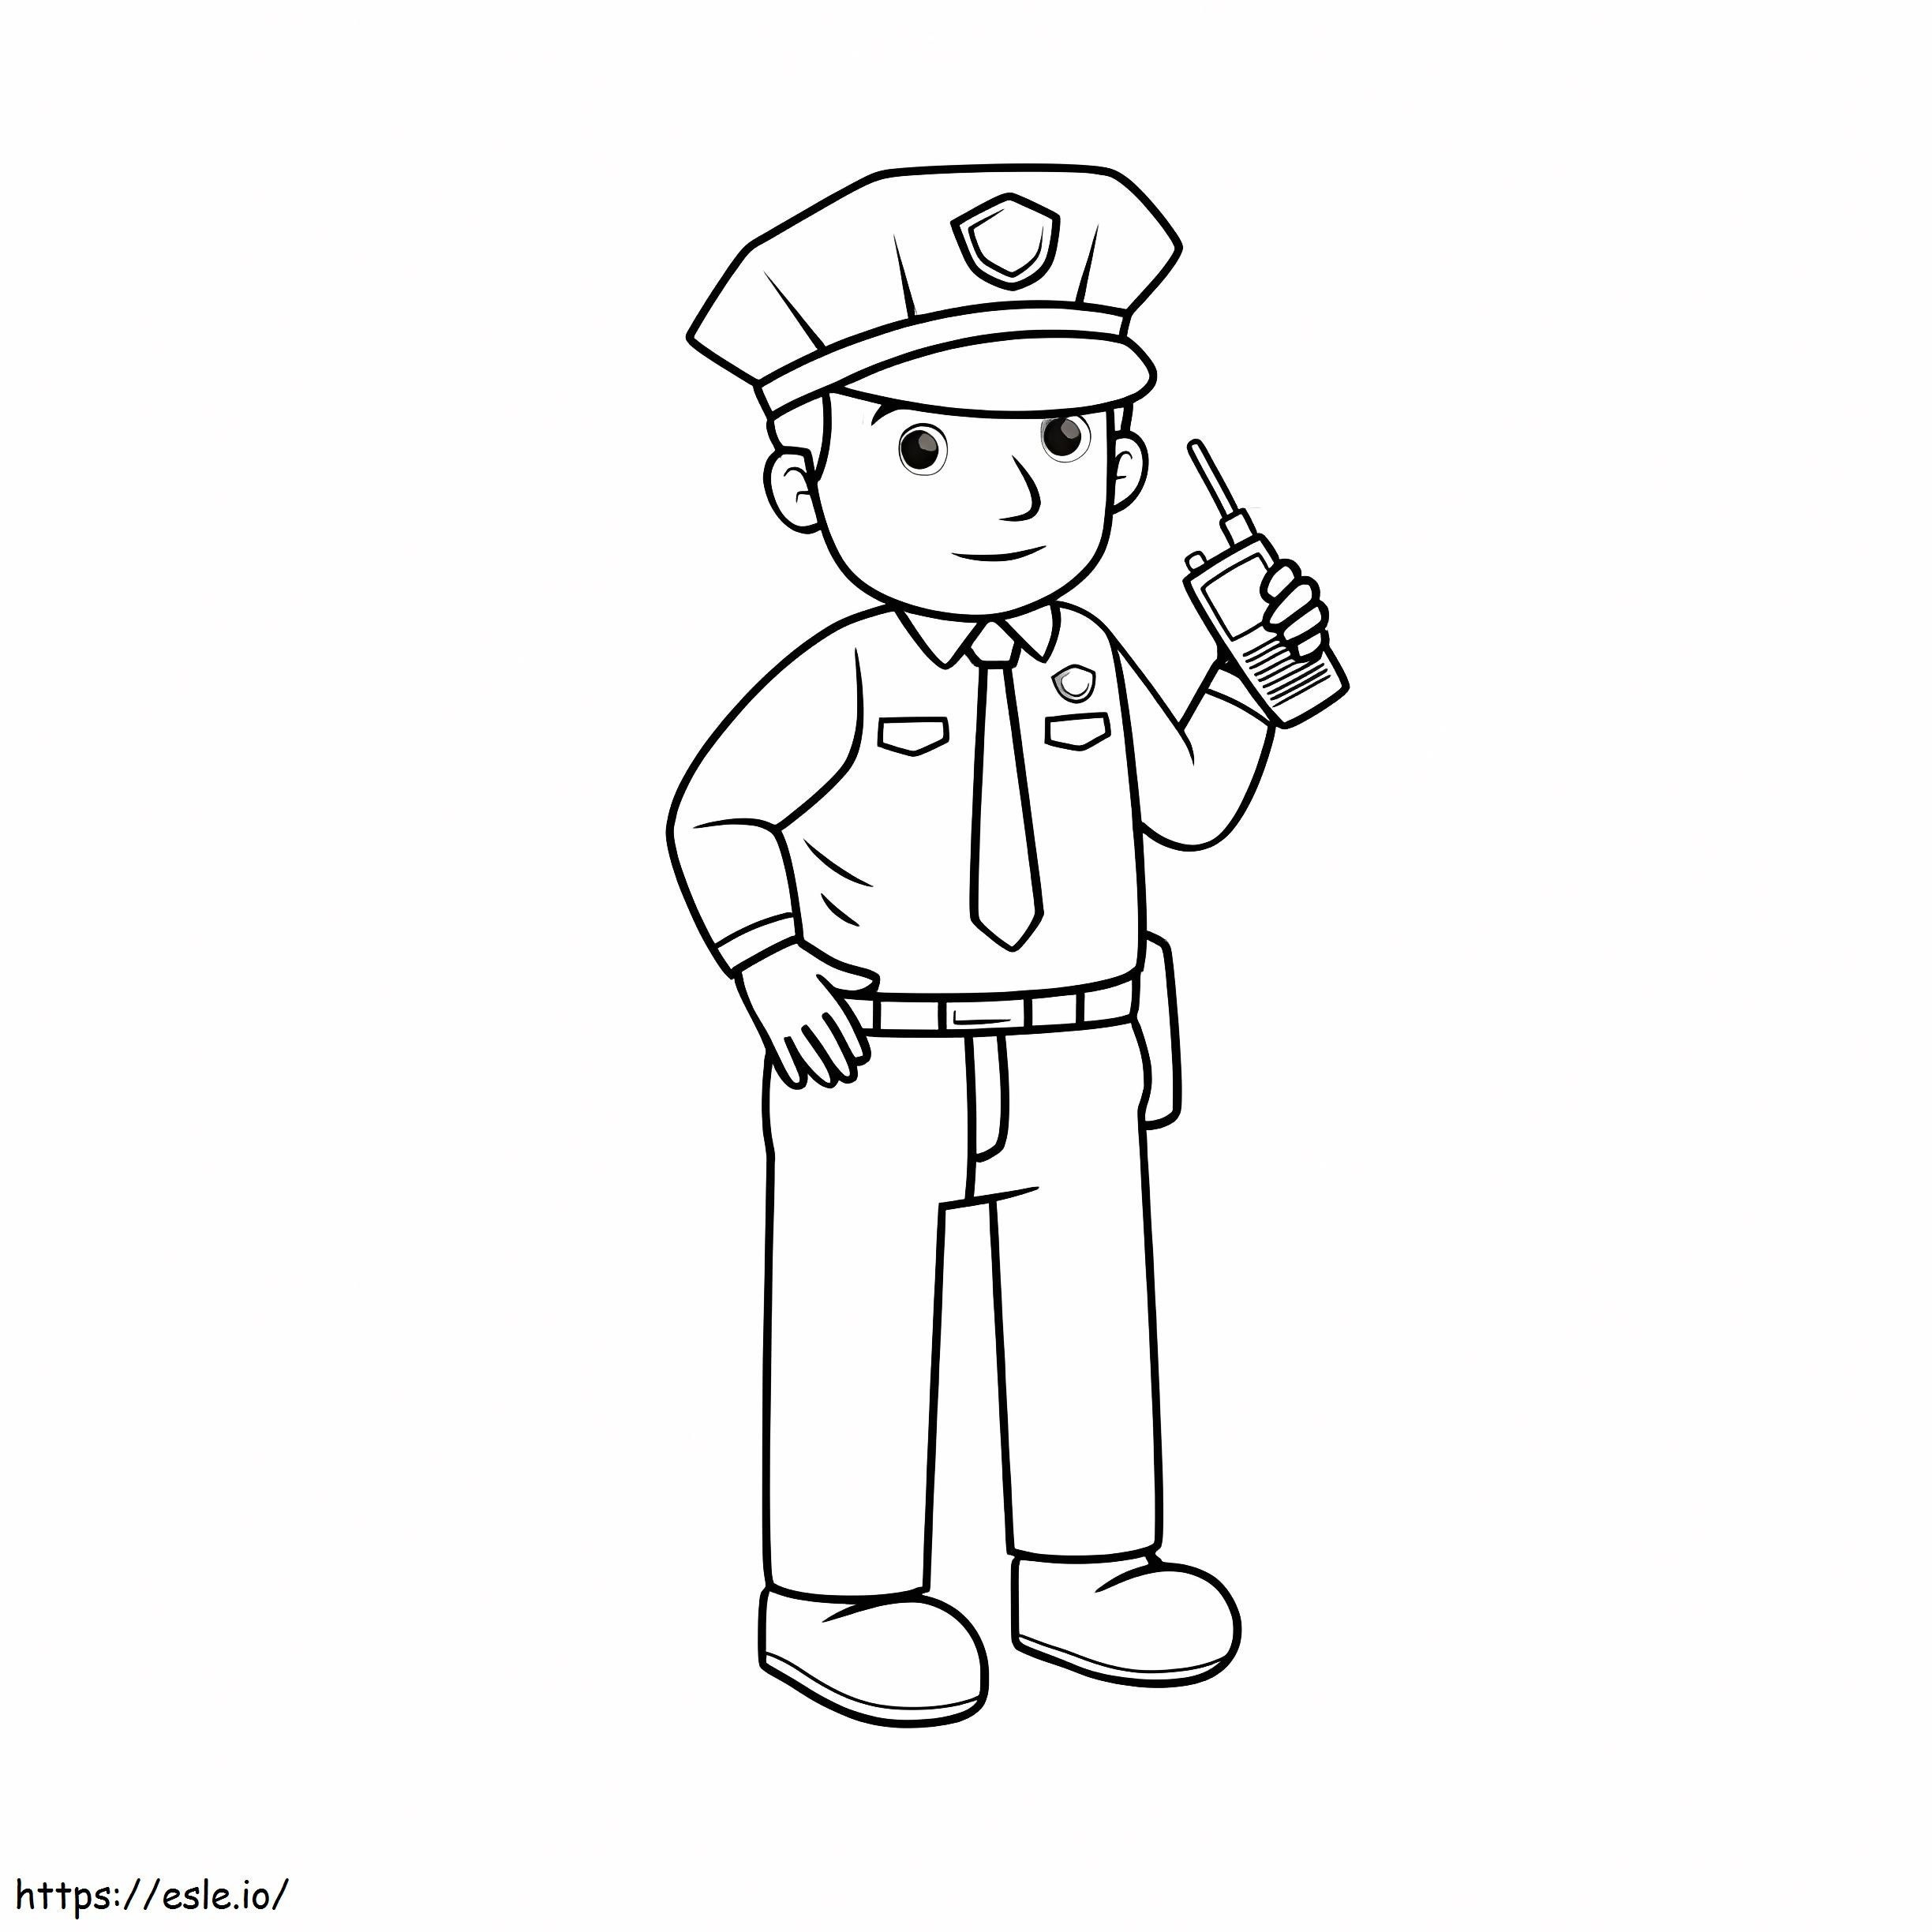 Polizia che tiene il walkie-talkie da colorare